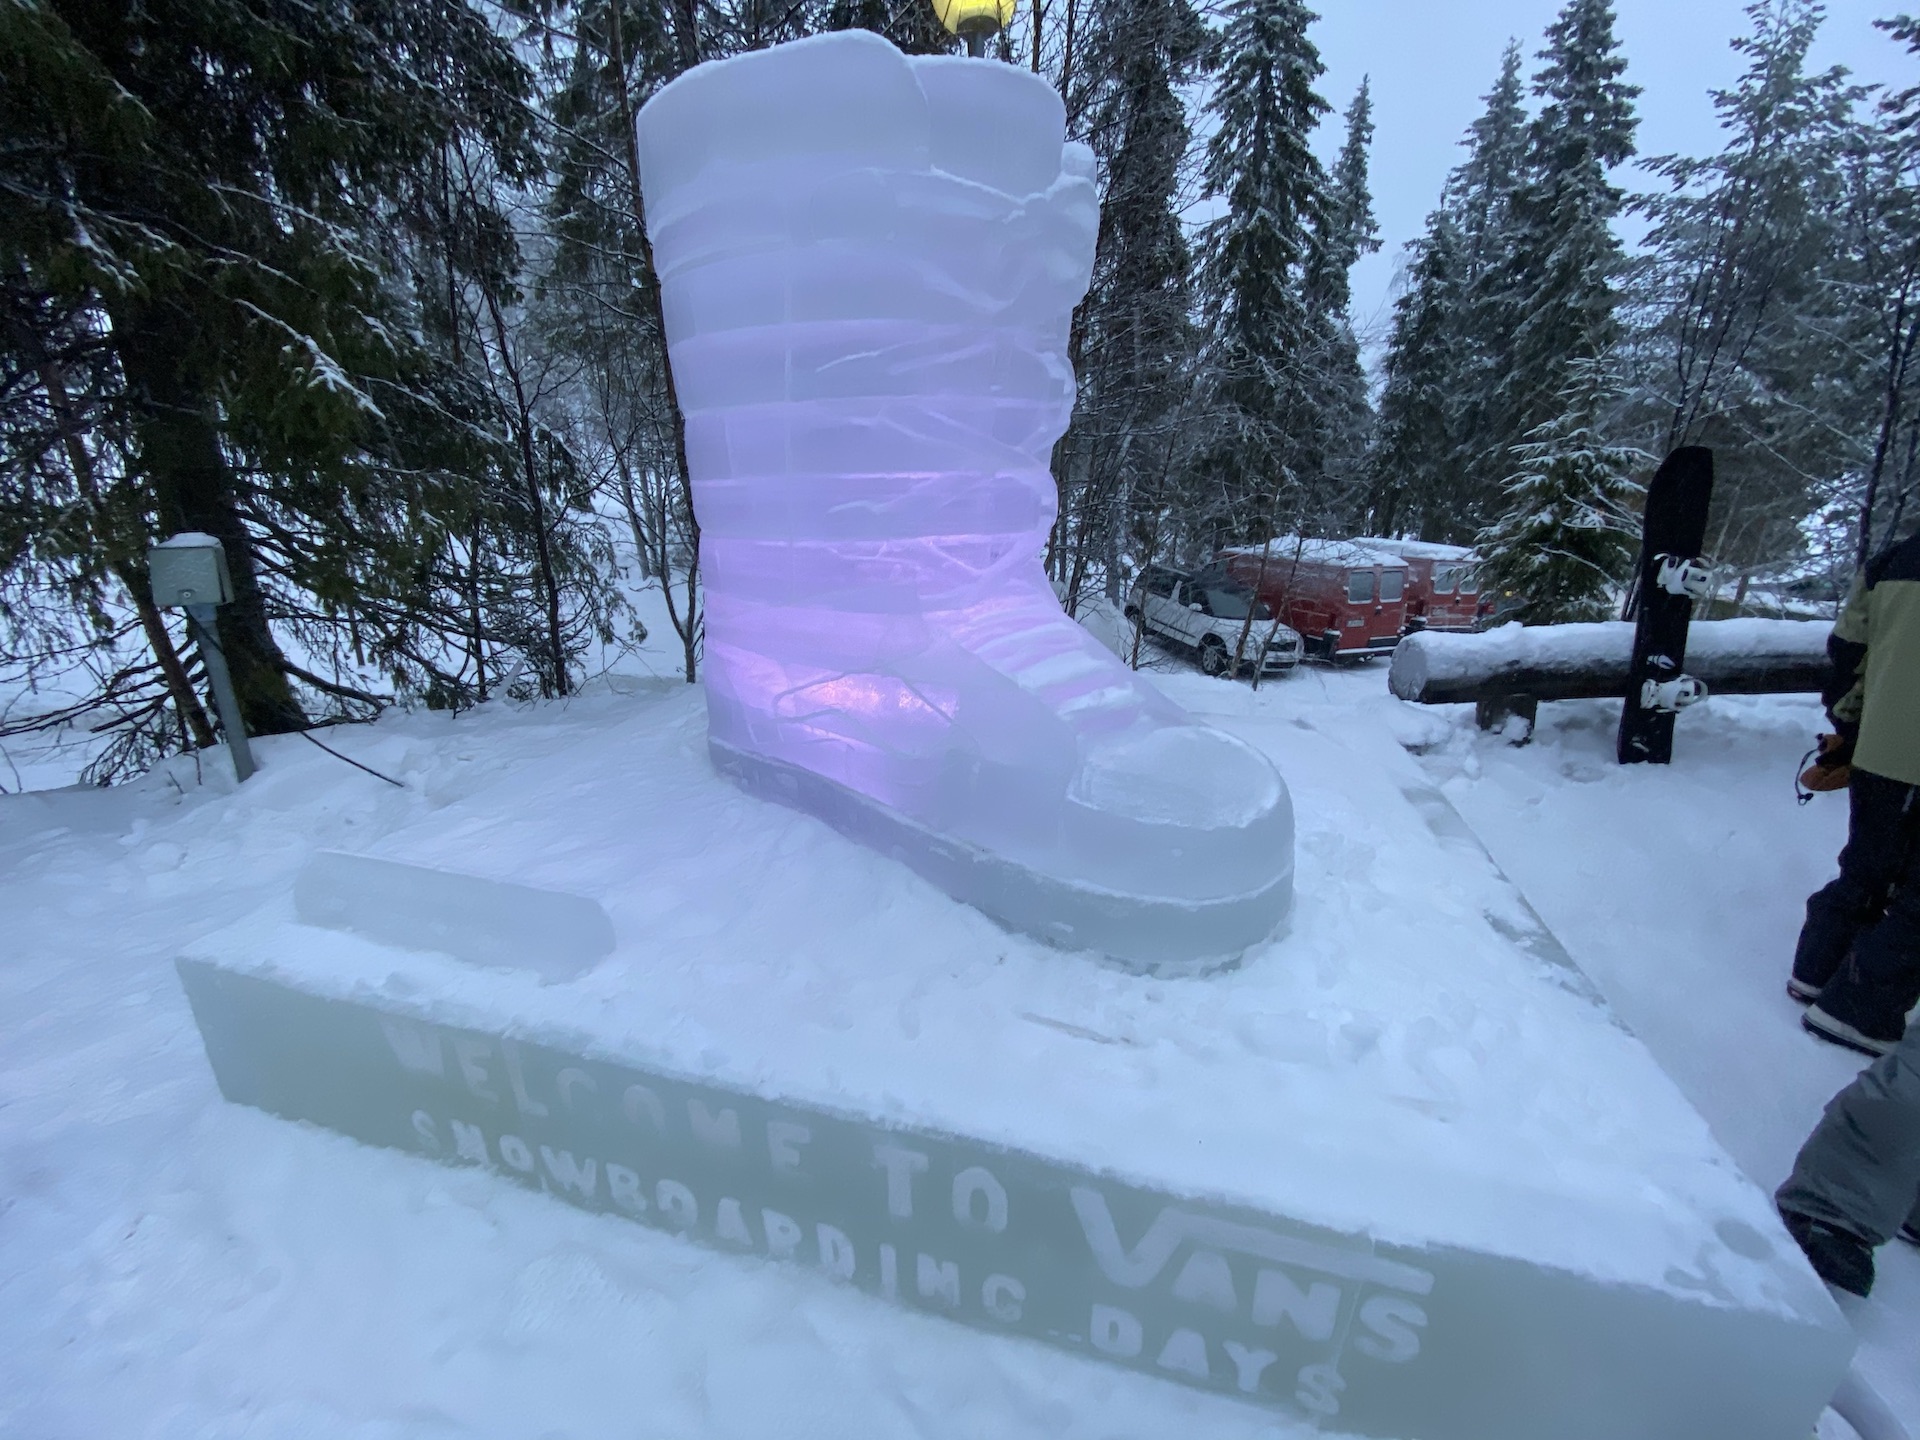 Vans Snowboarding Days 2020, Ruka Finland